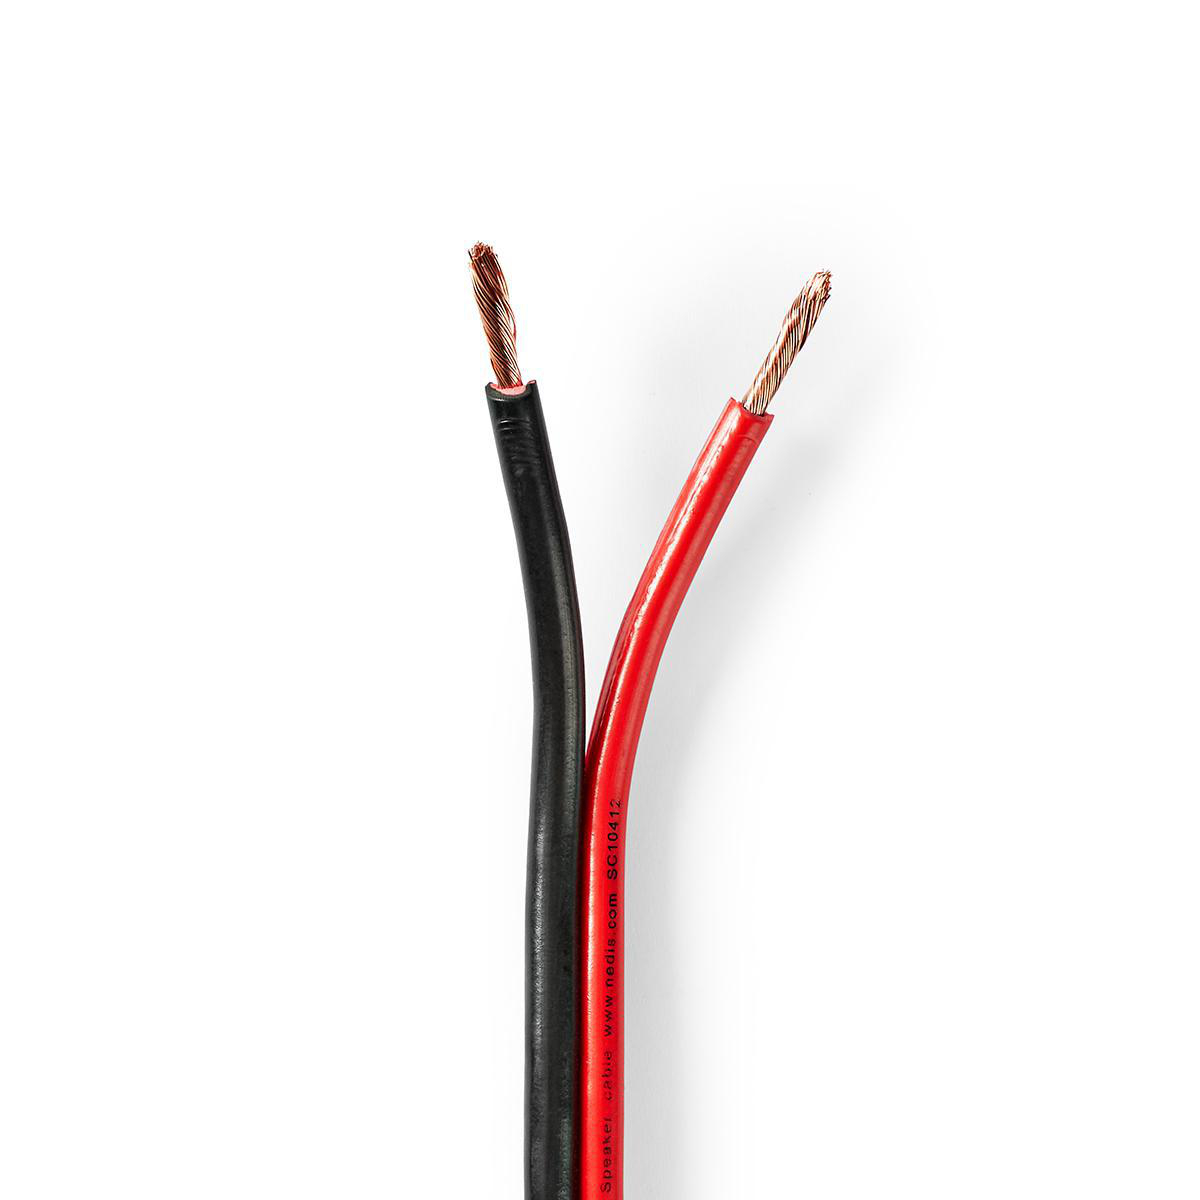 Nedis reproduktorový kabel 2 x 2.5 mm CCA, černý/červený vodič, 25 m (CAGW2500BK250)